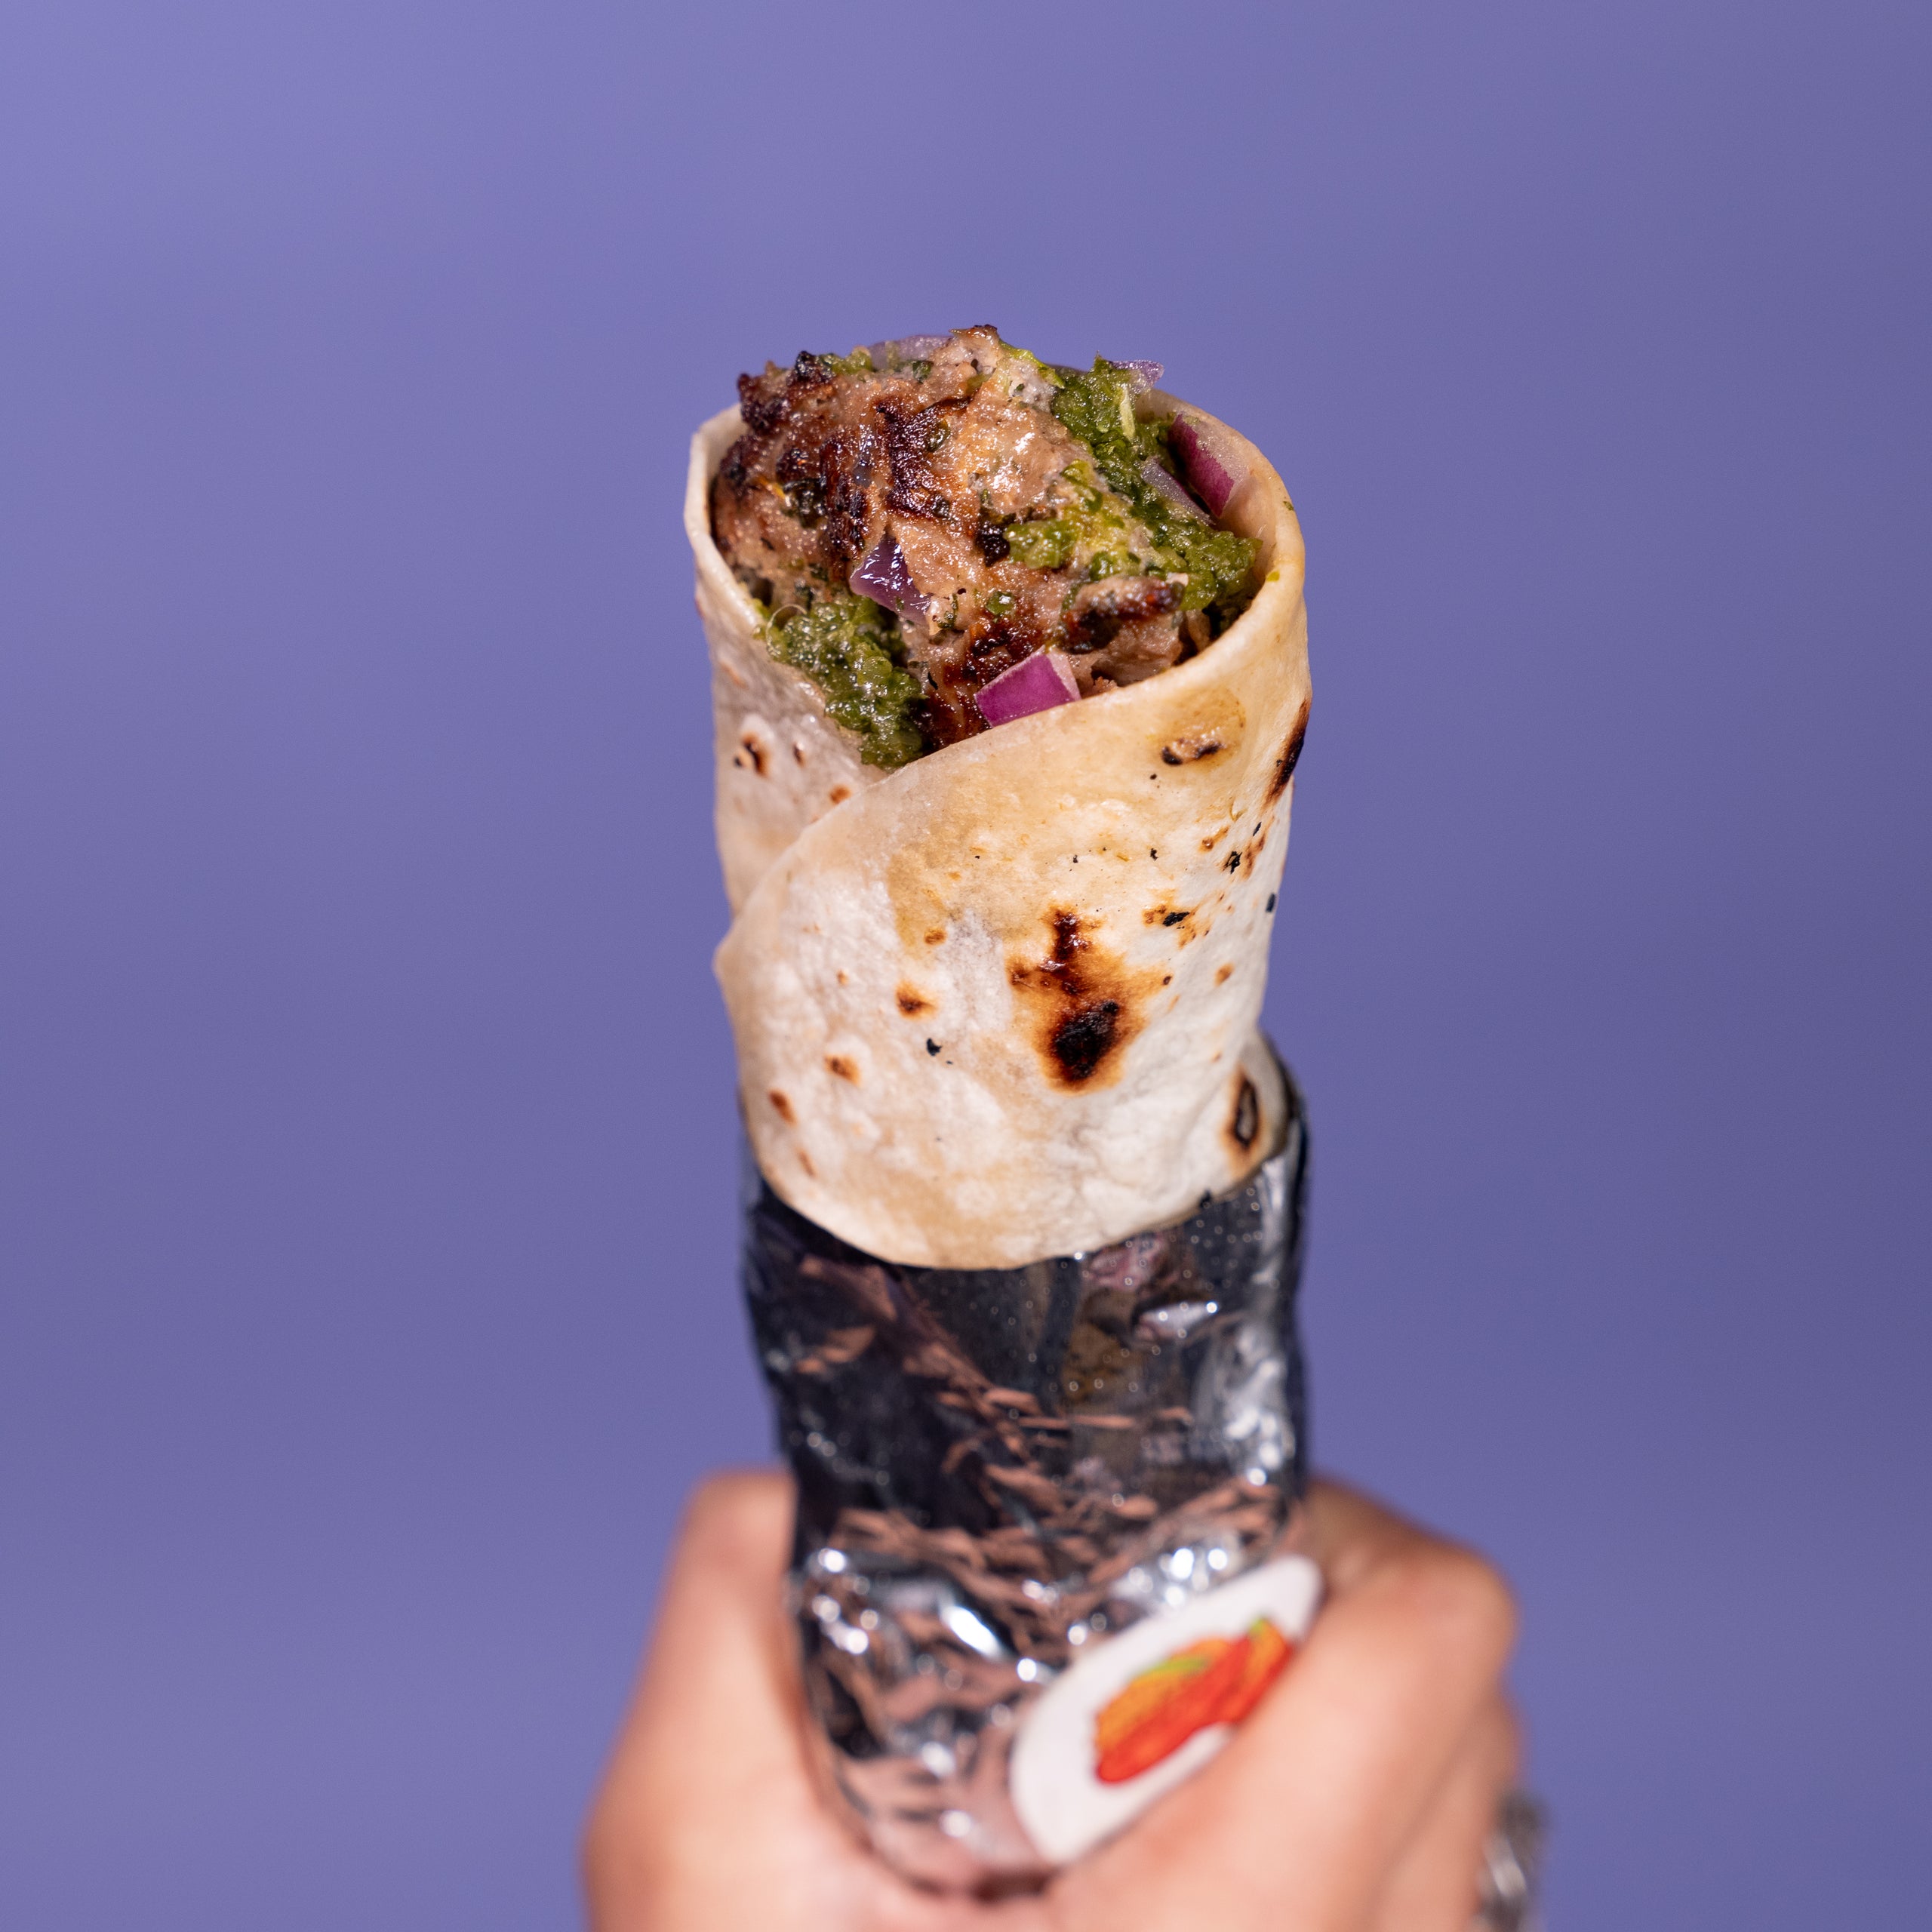 Kathi Kebab Roll Recipe: How to make Kathi Kebab Roll Recipe at